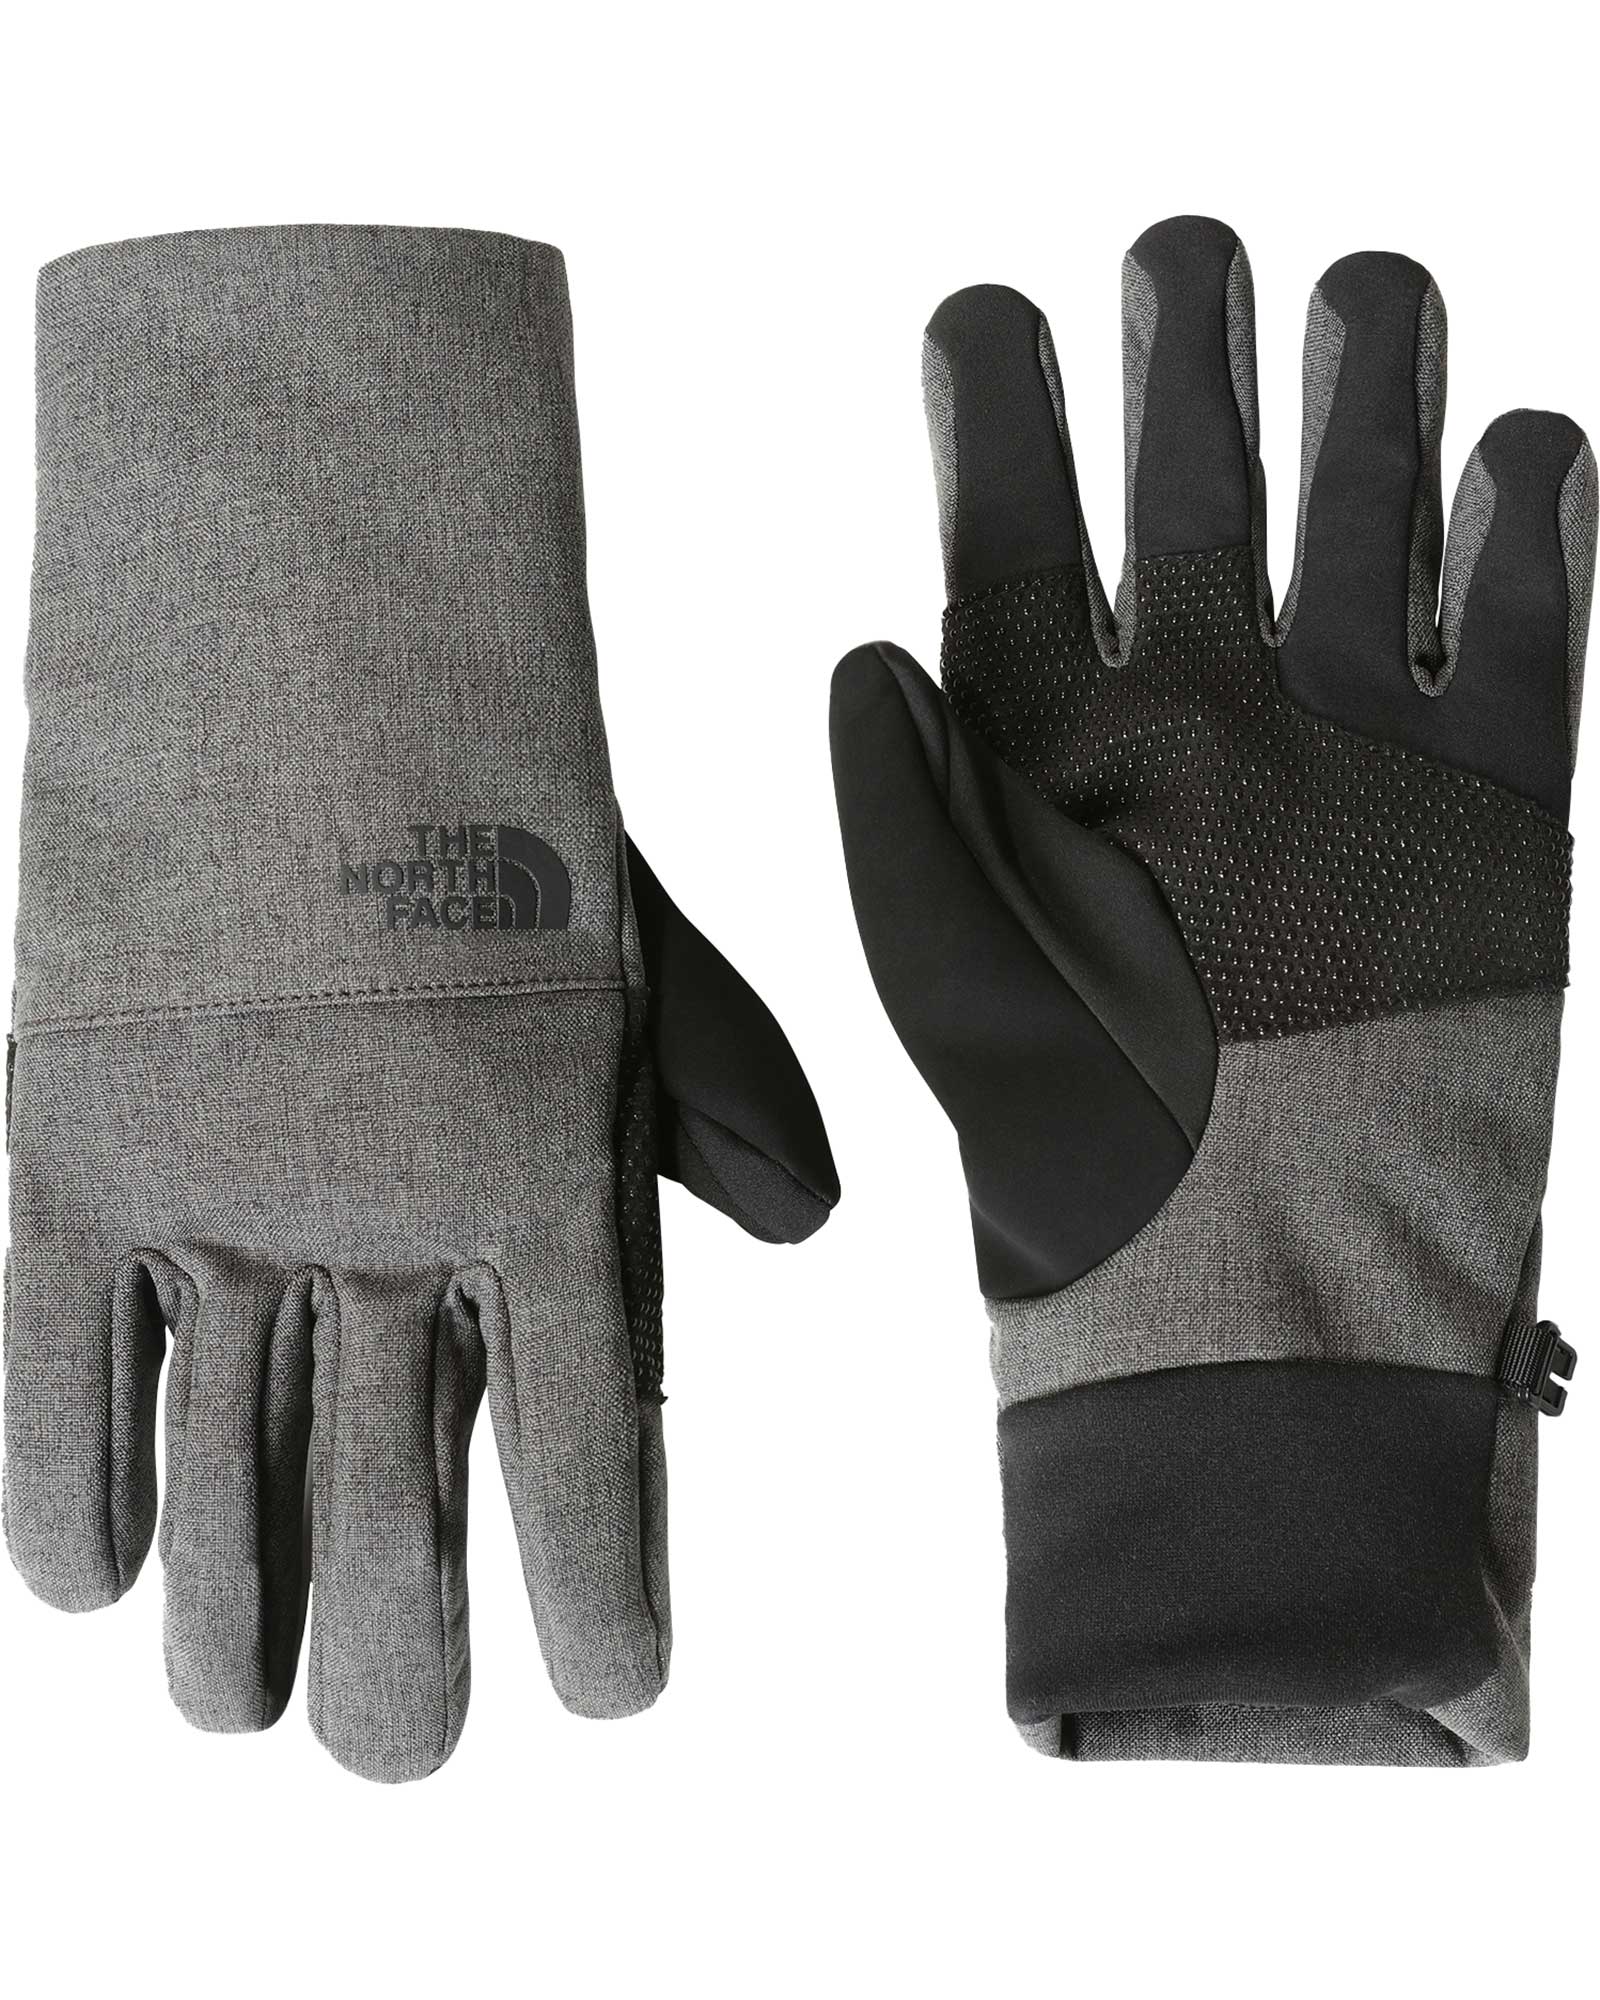 The North Face Apex Etip Men’s Gloves - TNF Dark Grey Heather S